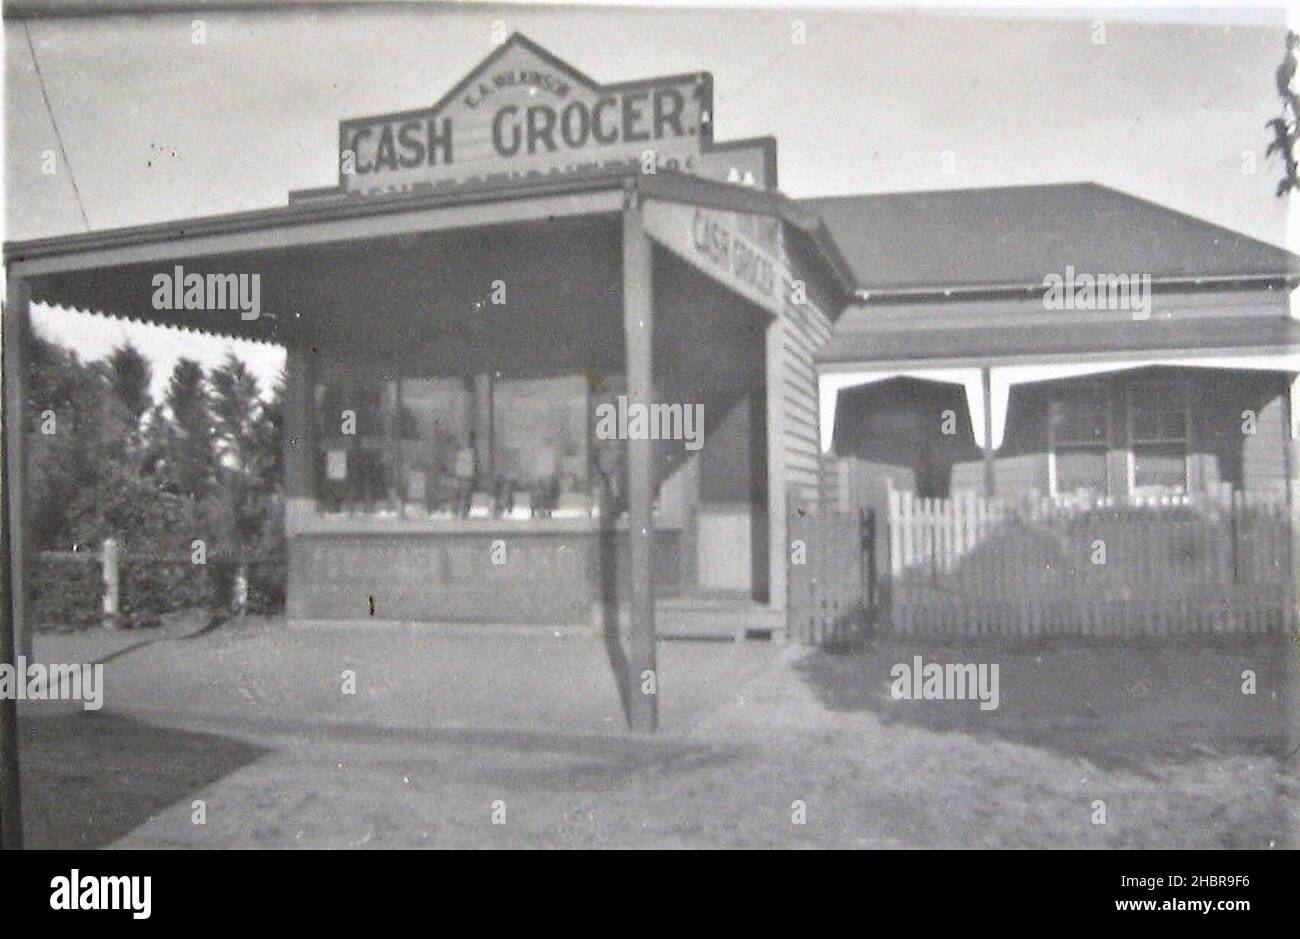 E A Wilkinson, Cash Grocer, Mordialloc, Melbourne, Victoria - early 1900 Stock Photo